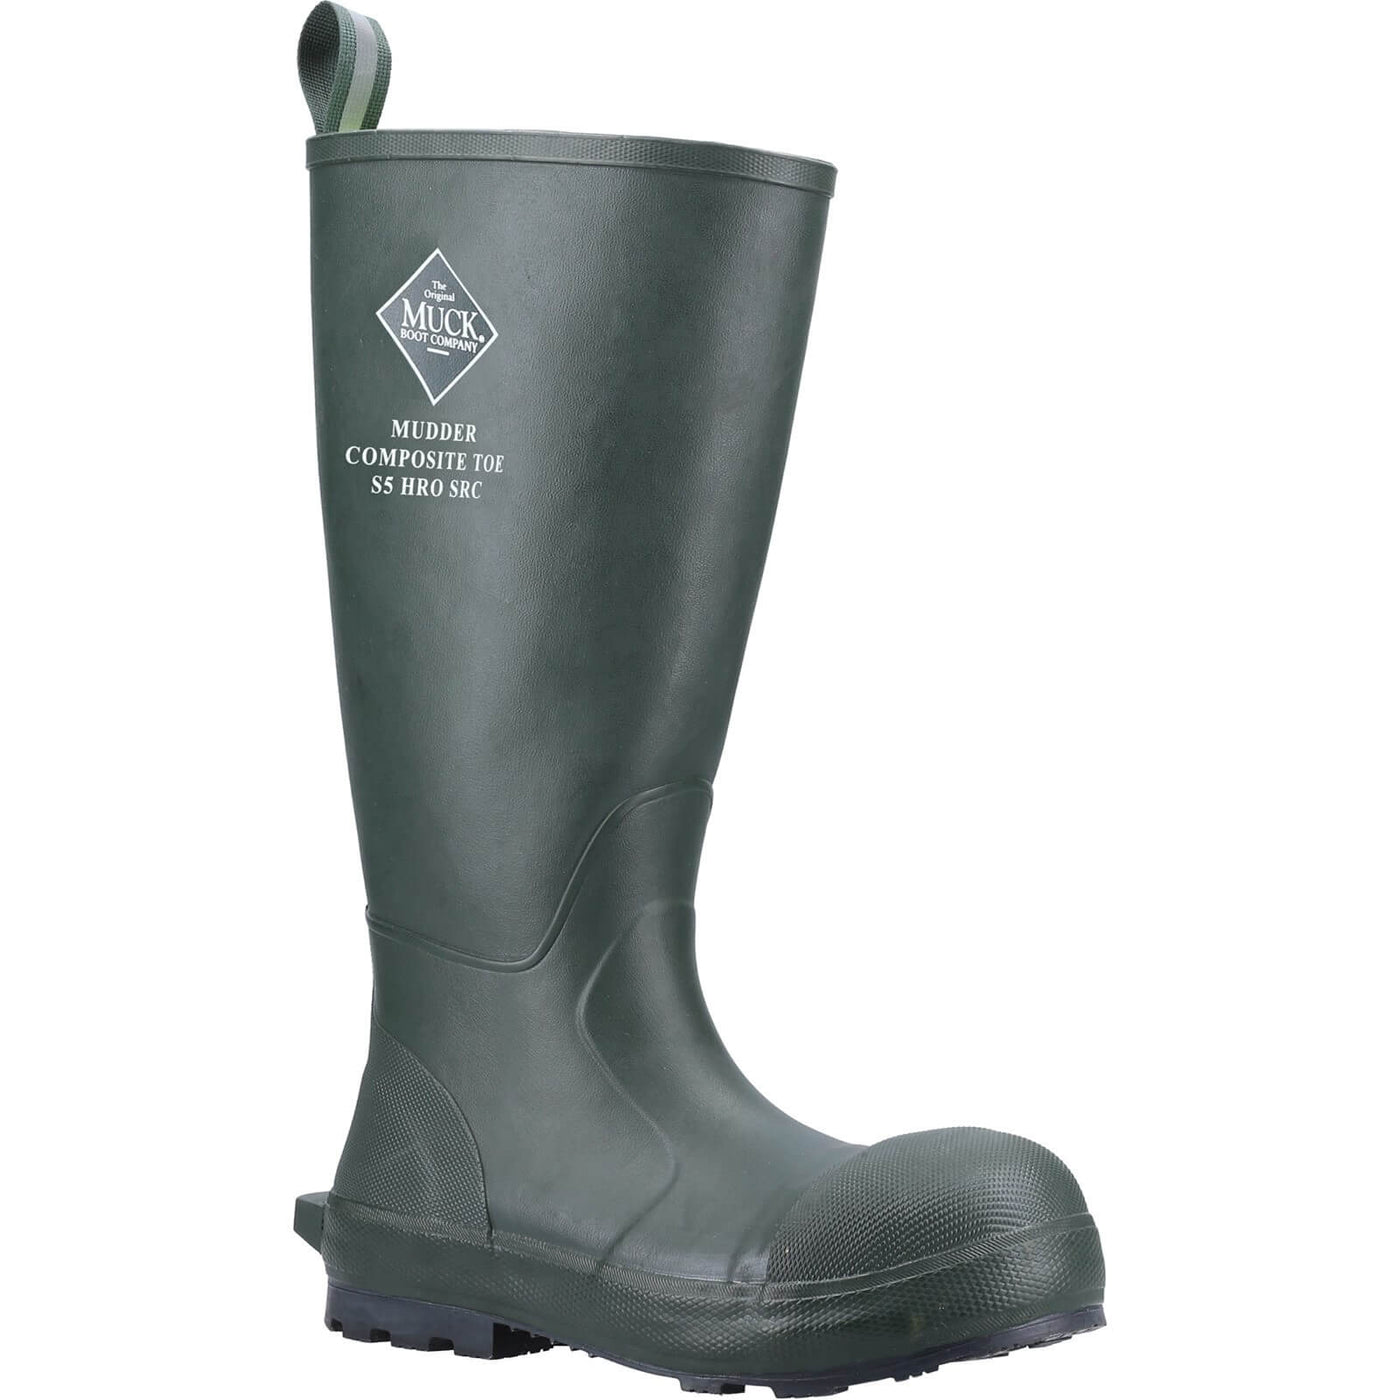 Muck Boots Mudder S5 Tall Safety Wellington Boots Moss 1#colour_moss